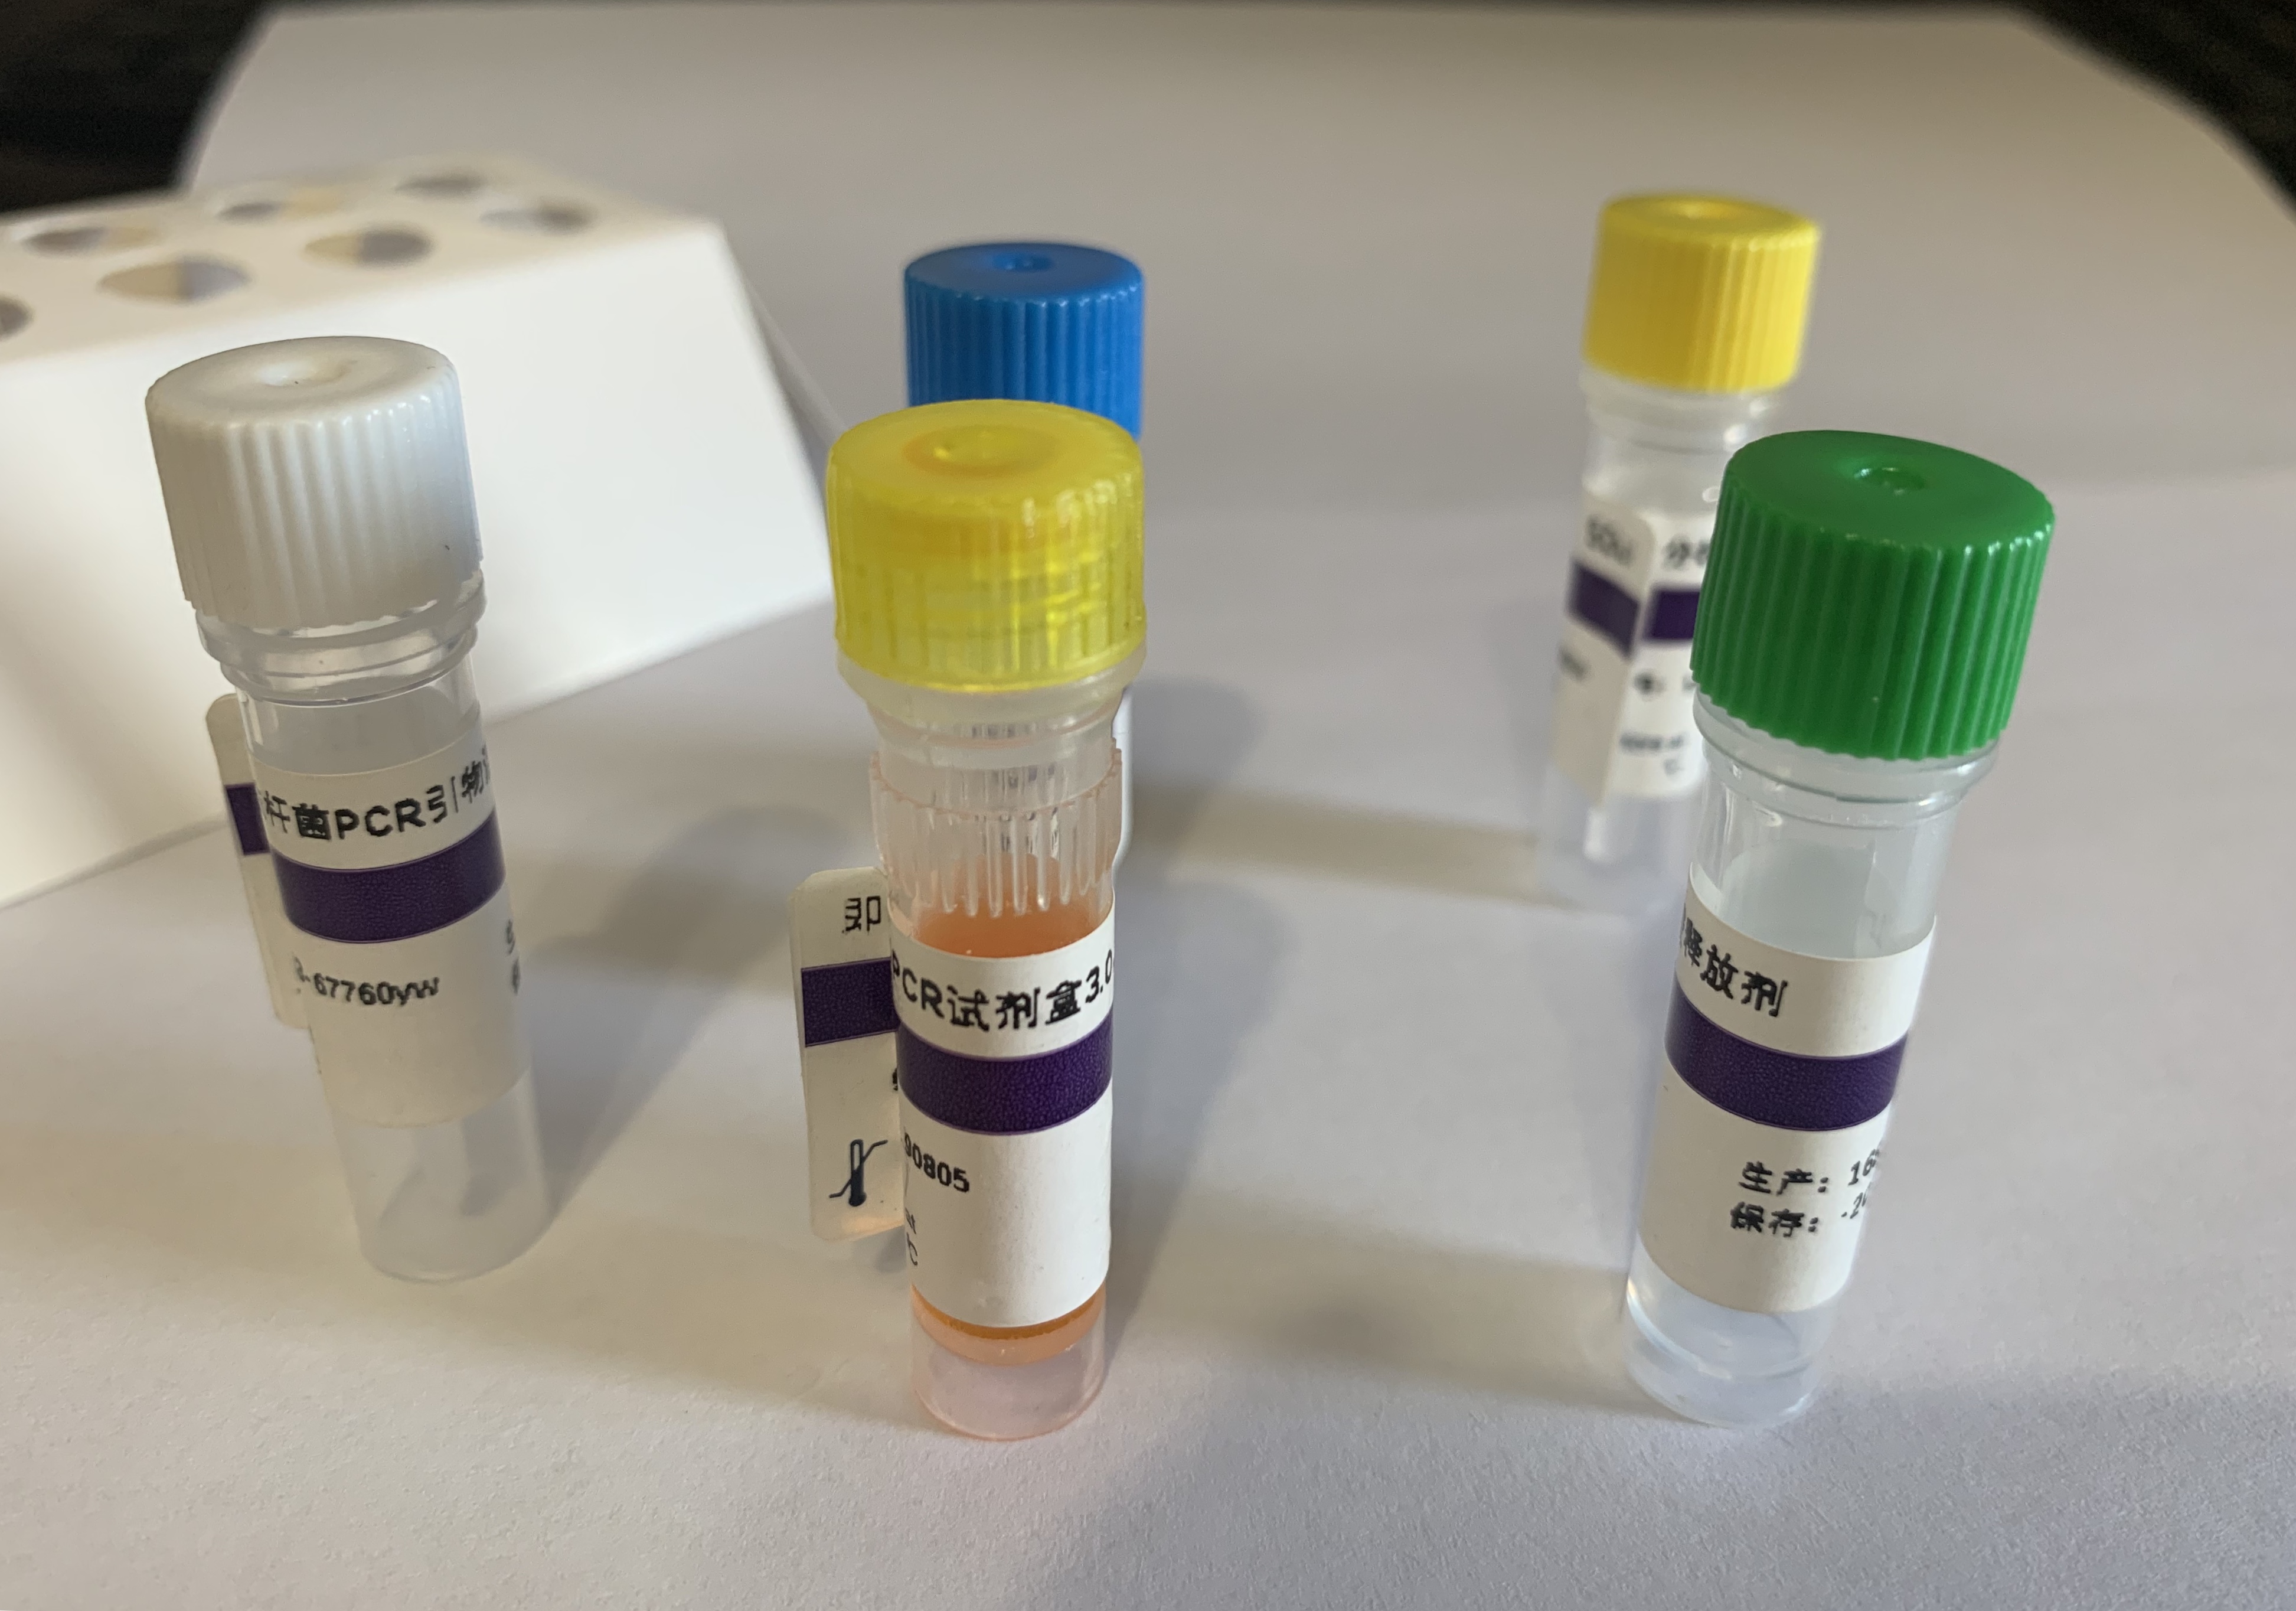 甲型流感（禽流感）病毒M1亚型探针法荧光定量RT-PCR试剂盒